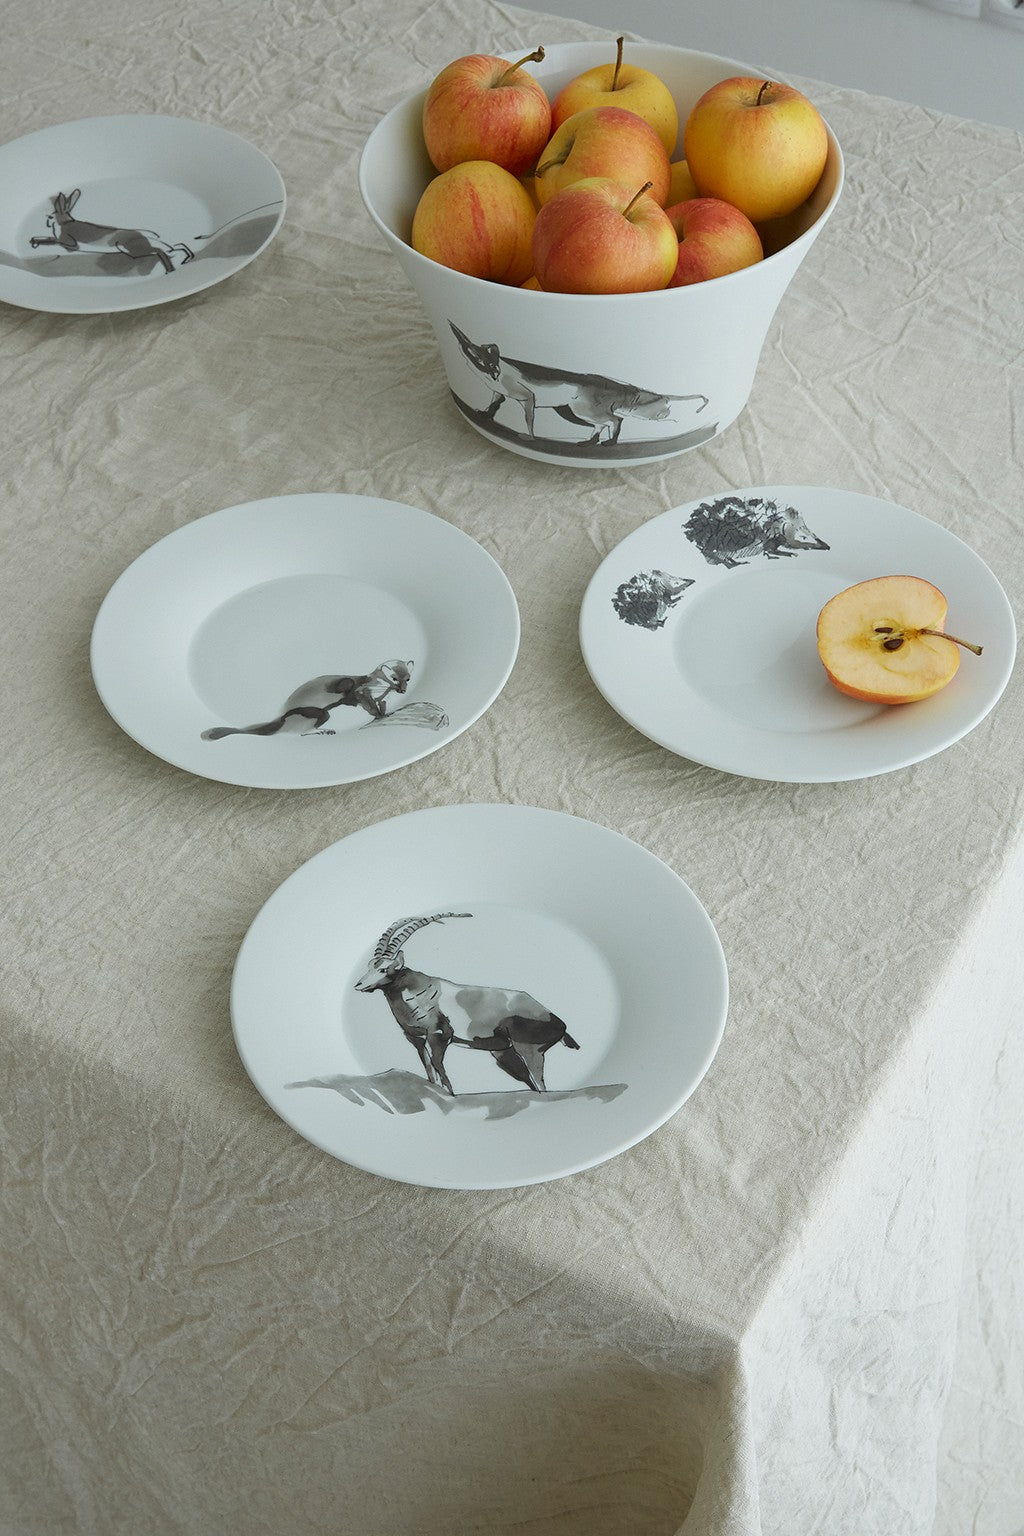 Ein Set Keramikgeschirr mit Tierillustrationen auf einem Tisch mit einer Tischdecke in neutralen Farben. Auf einem der Teller steht eine Schüssel mit Äpfeln und ein geschnittener Apfel.